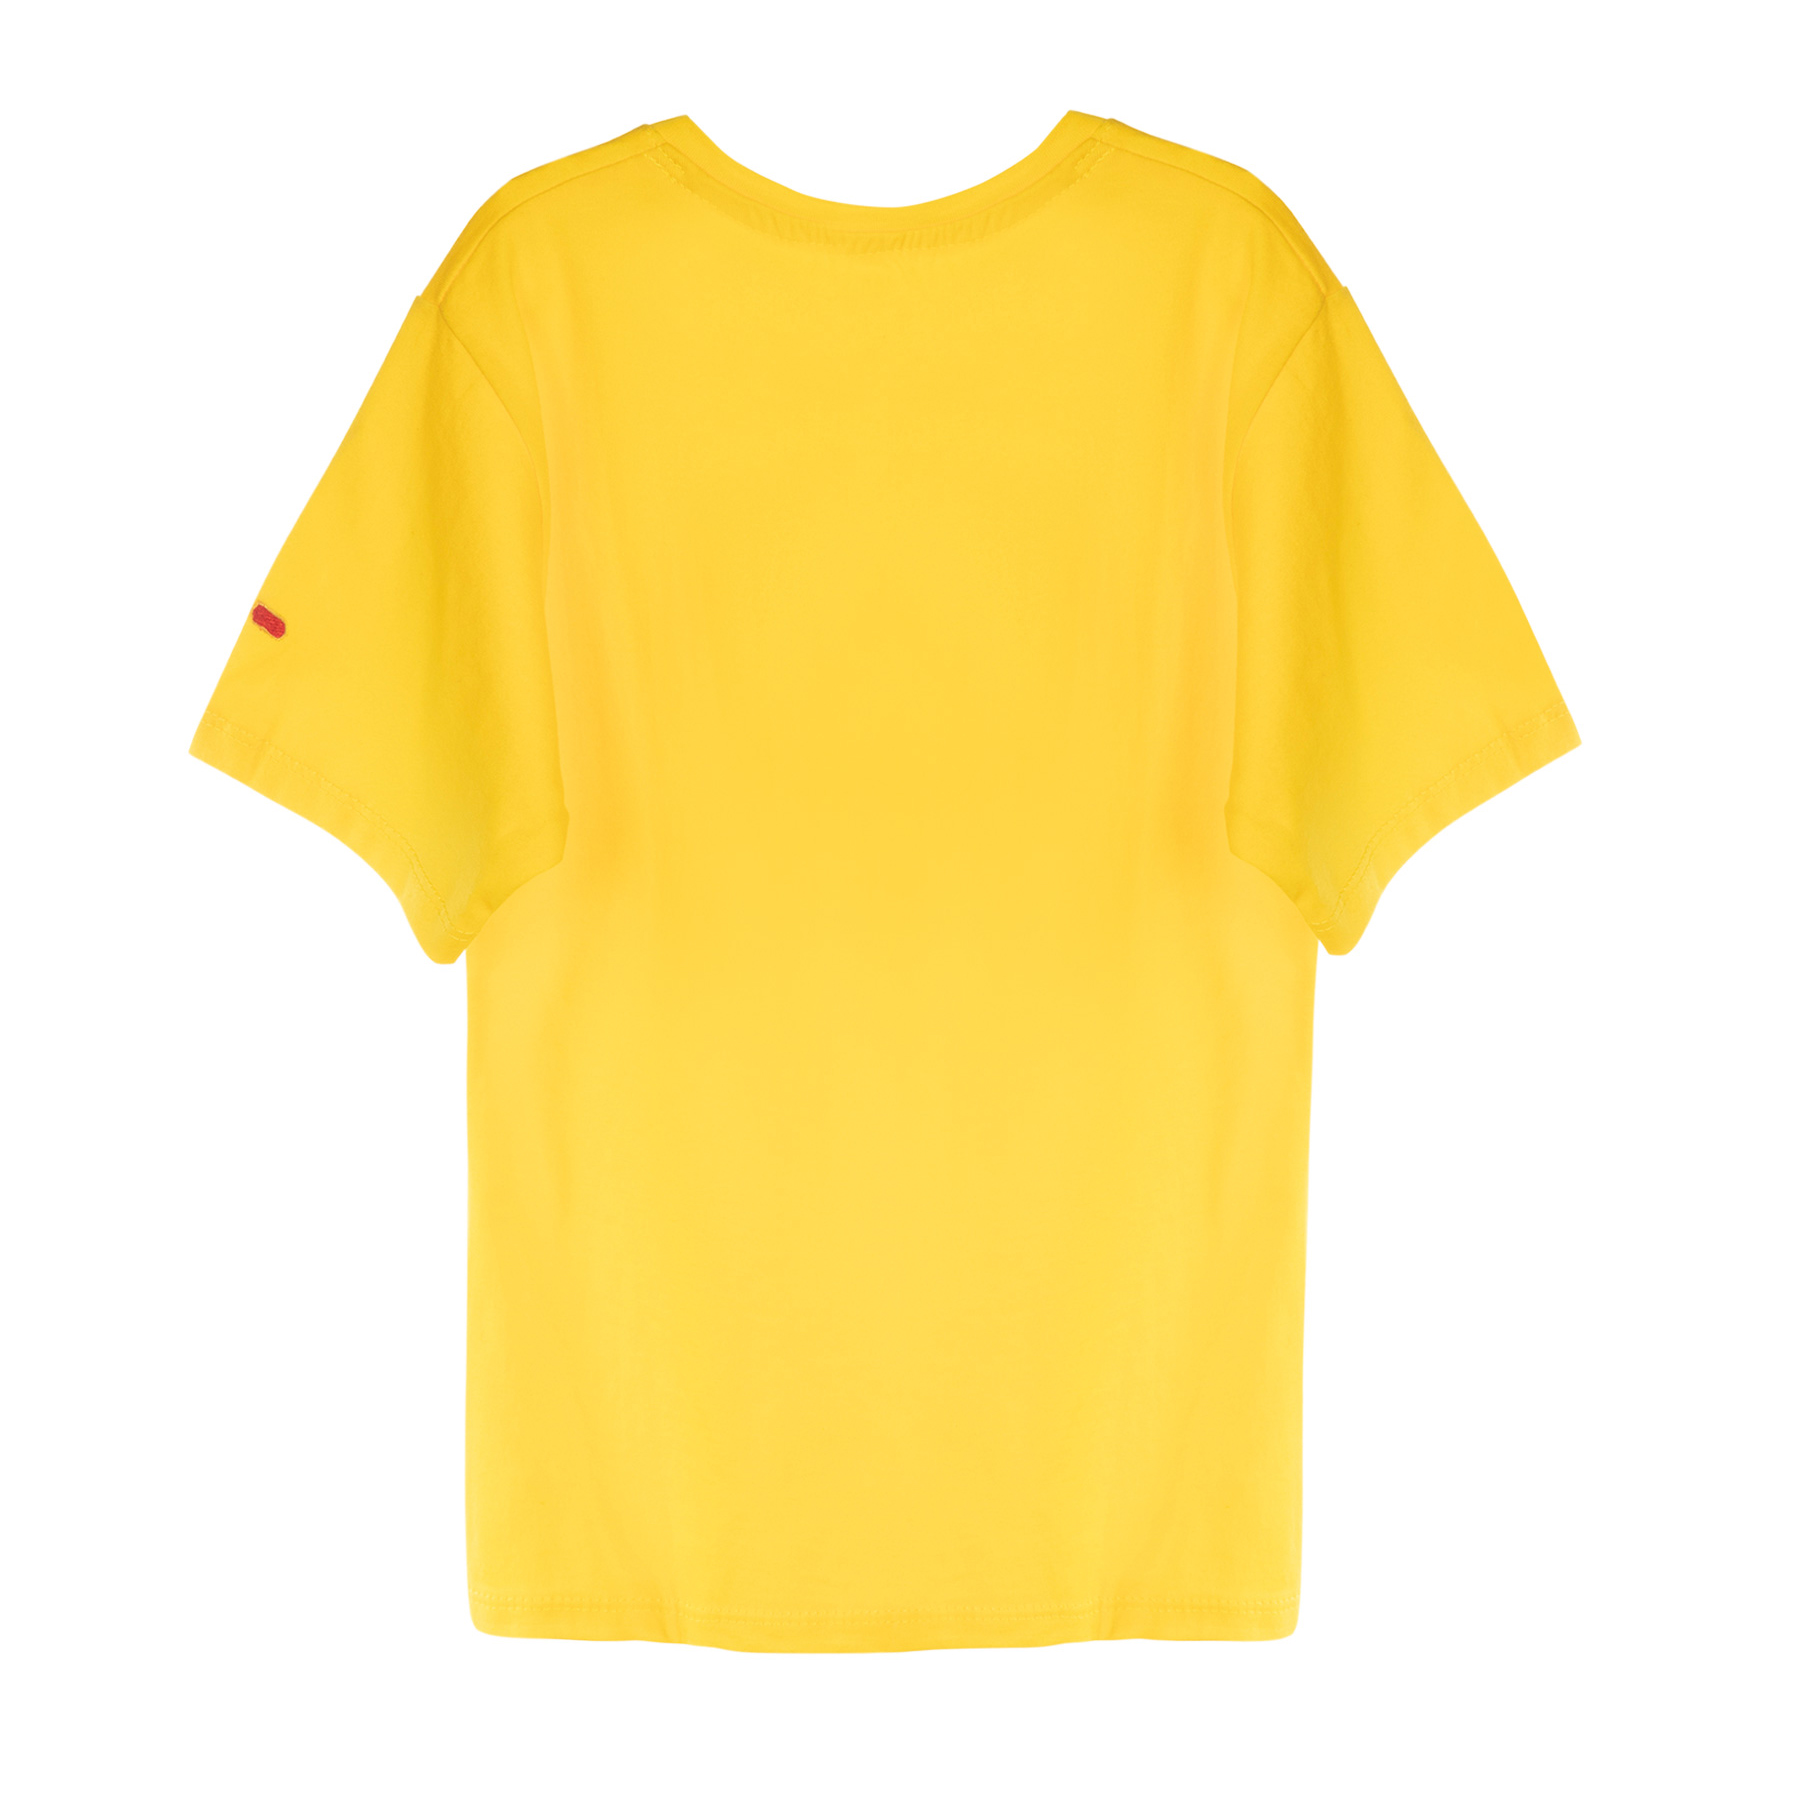 تی شرت آستین کوتاه دخترانه مادر مدل pineapple رنگ زرد -  - 2